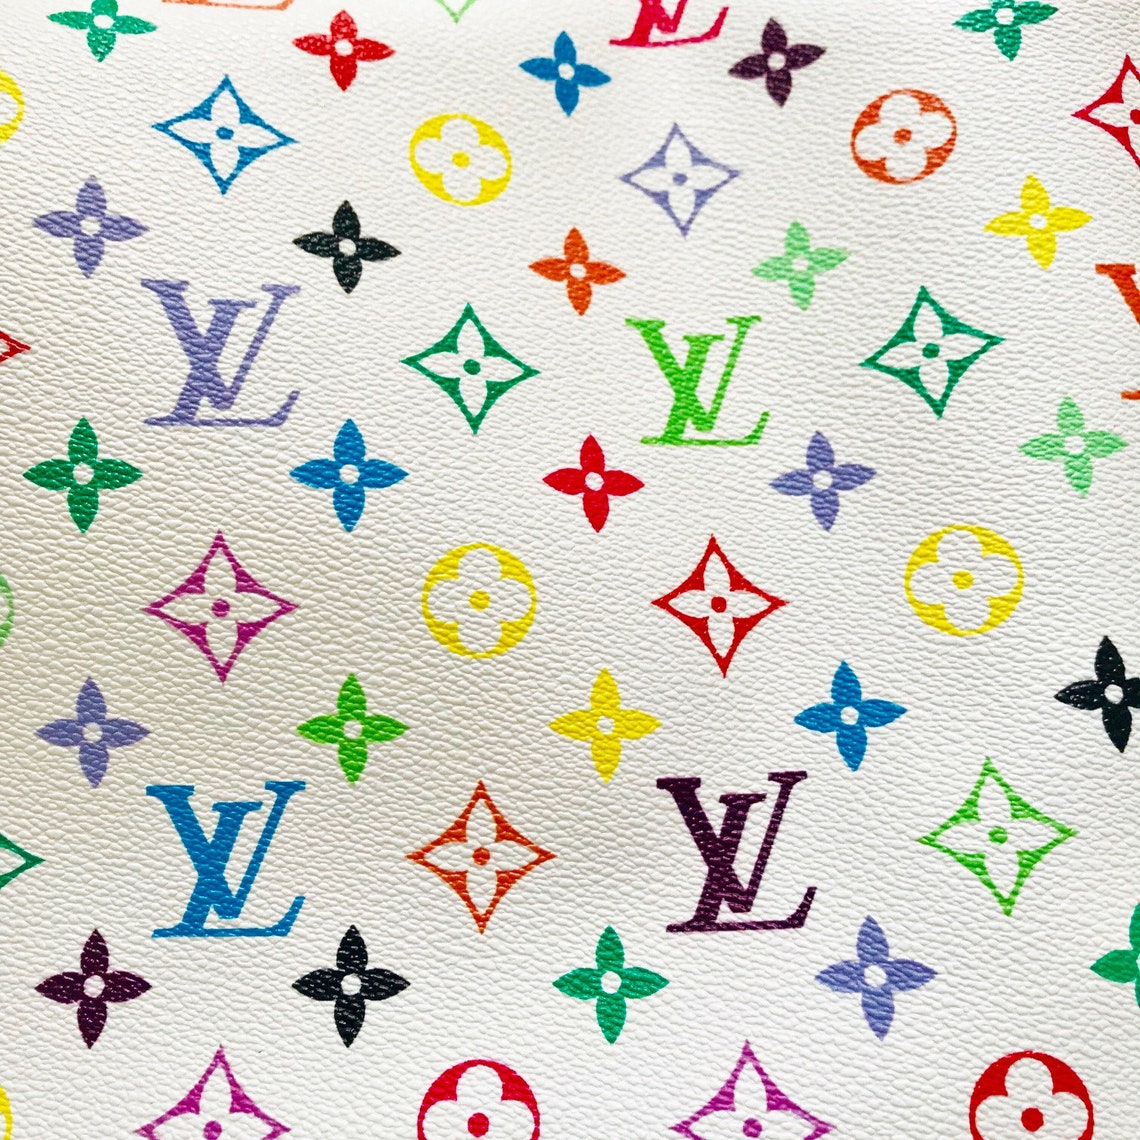 新包 | Louis Vuitton 上架 LV Crafty 限定系列手袋：致敬1980年代涂鸦艺术 - iBag · 包包